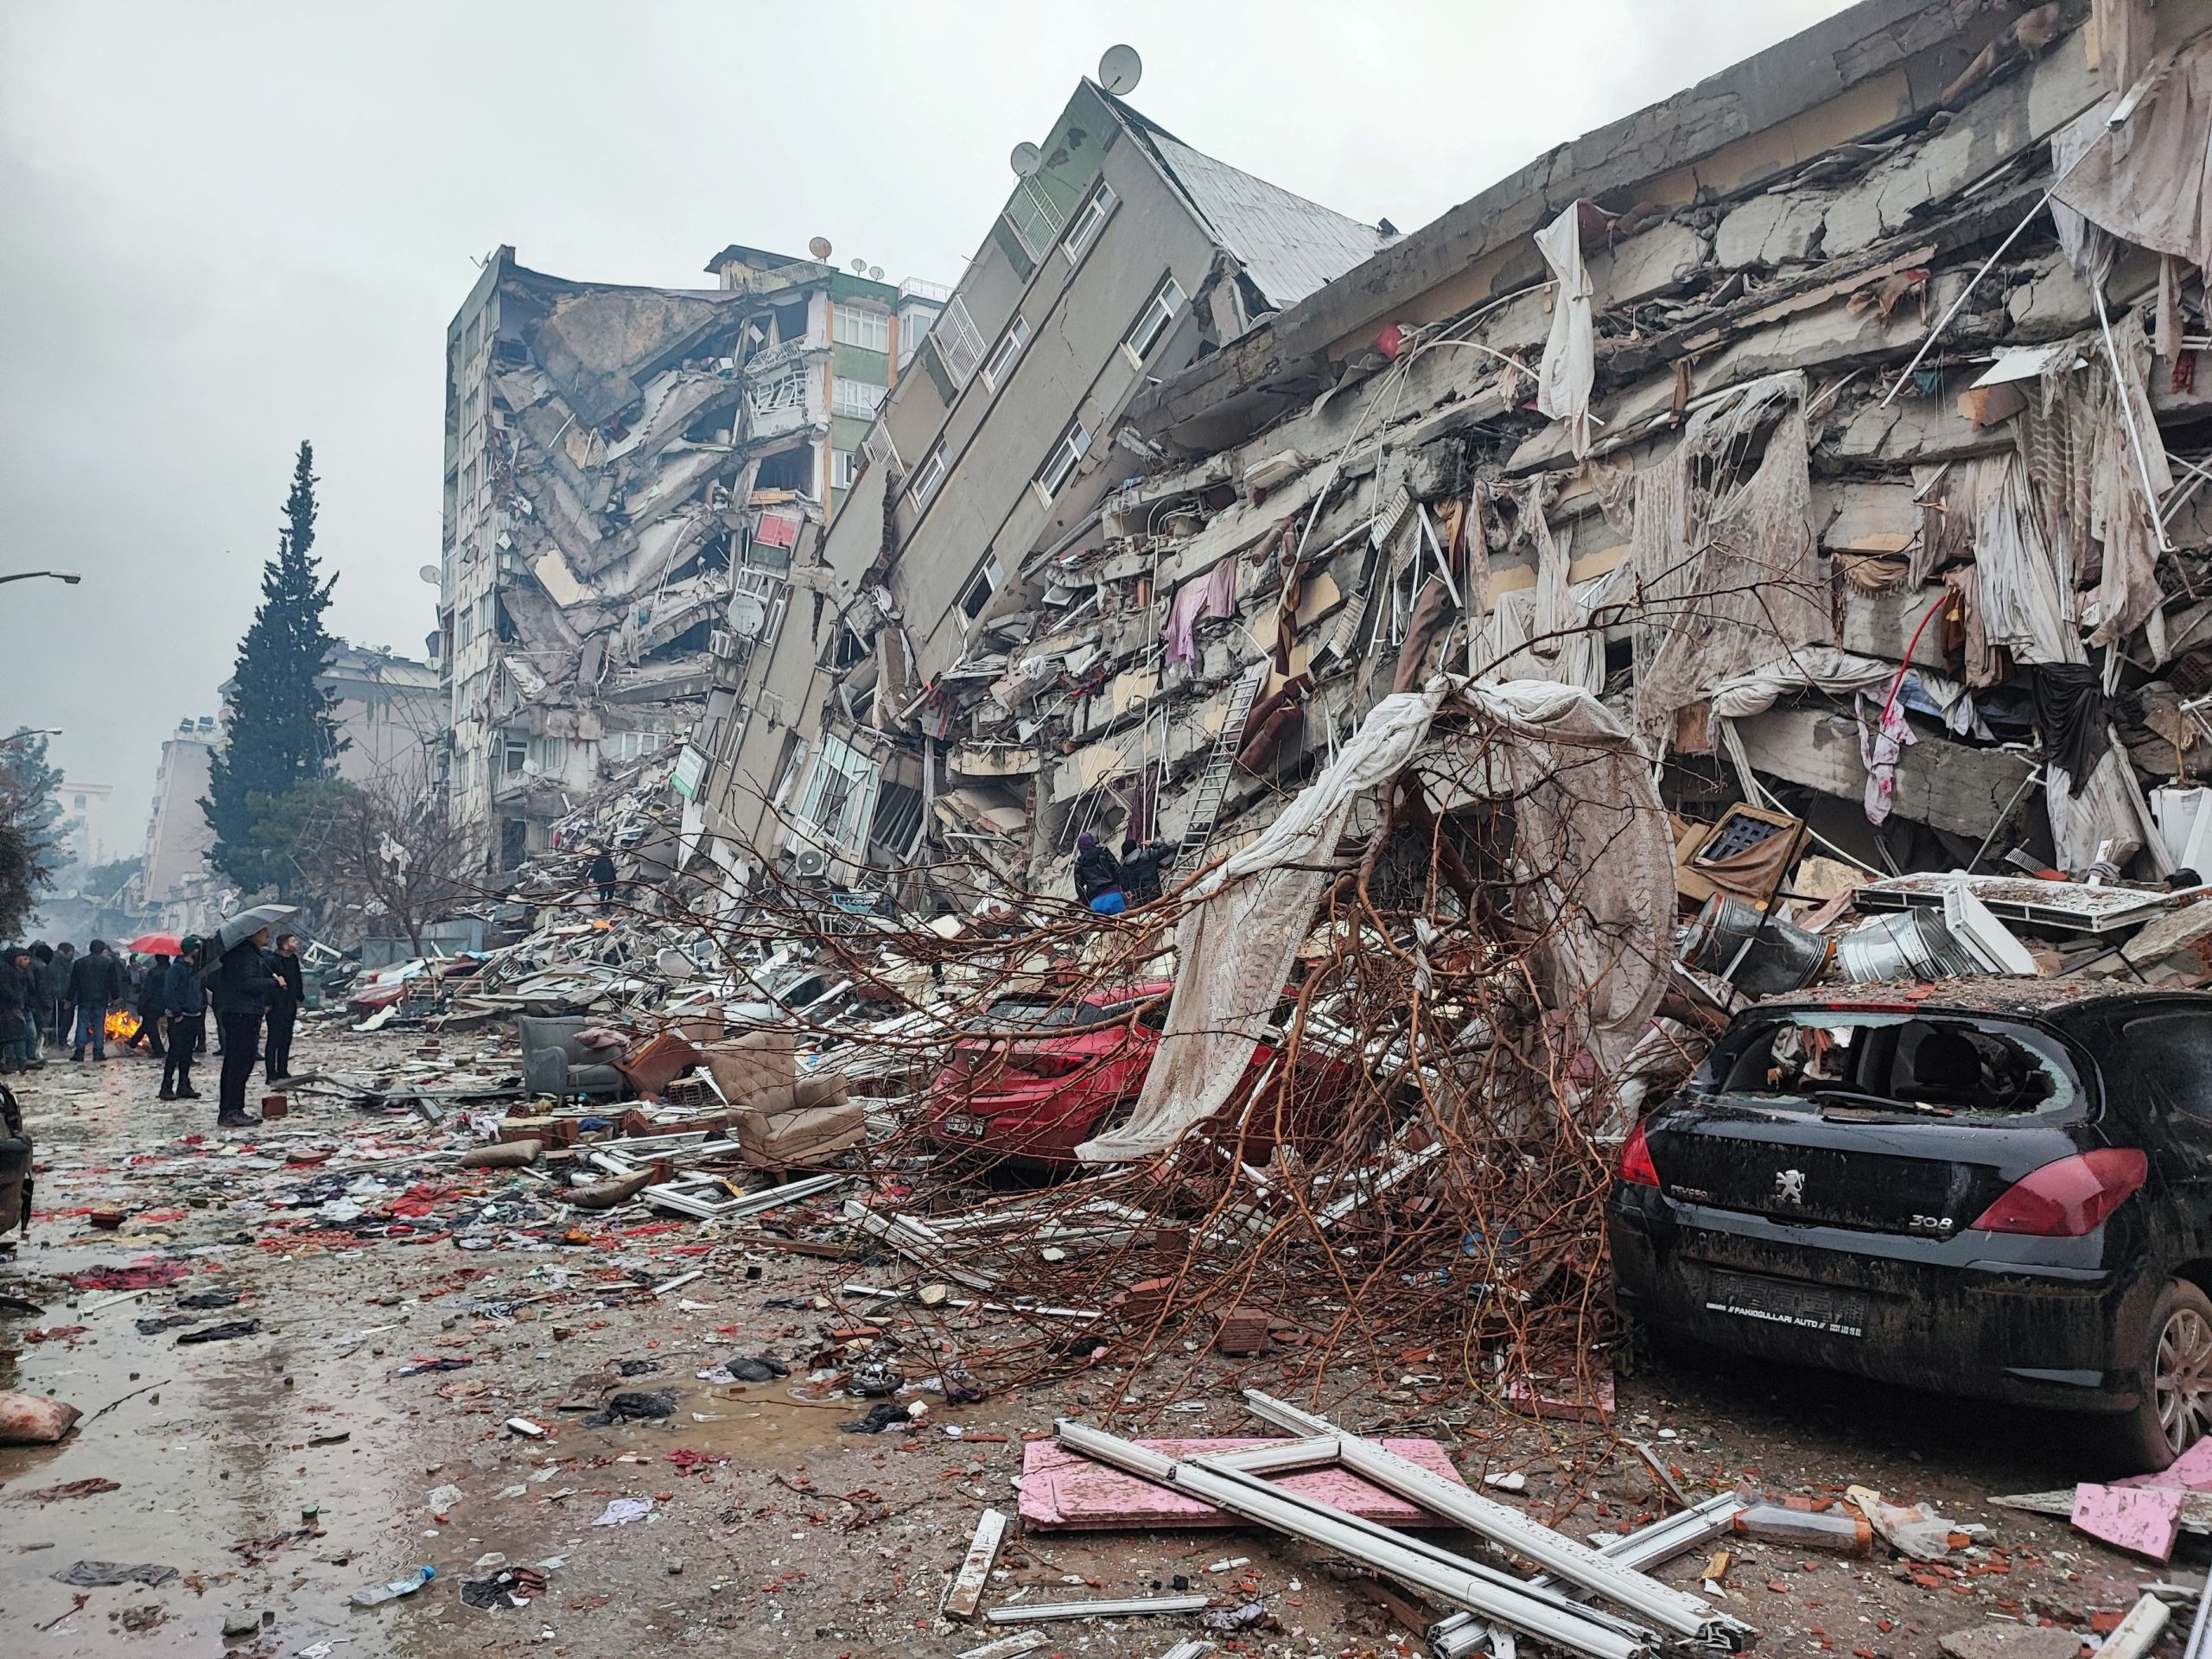 Σεισμός Τουρκία: «Μάλλον δεν ήταν η τελευταία ισχυρή δόνηση στην περιοχή» σύμφωνα με Γερμανό καθηγητή